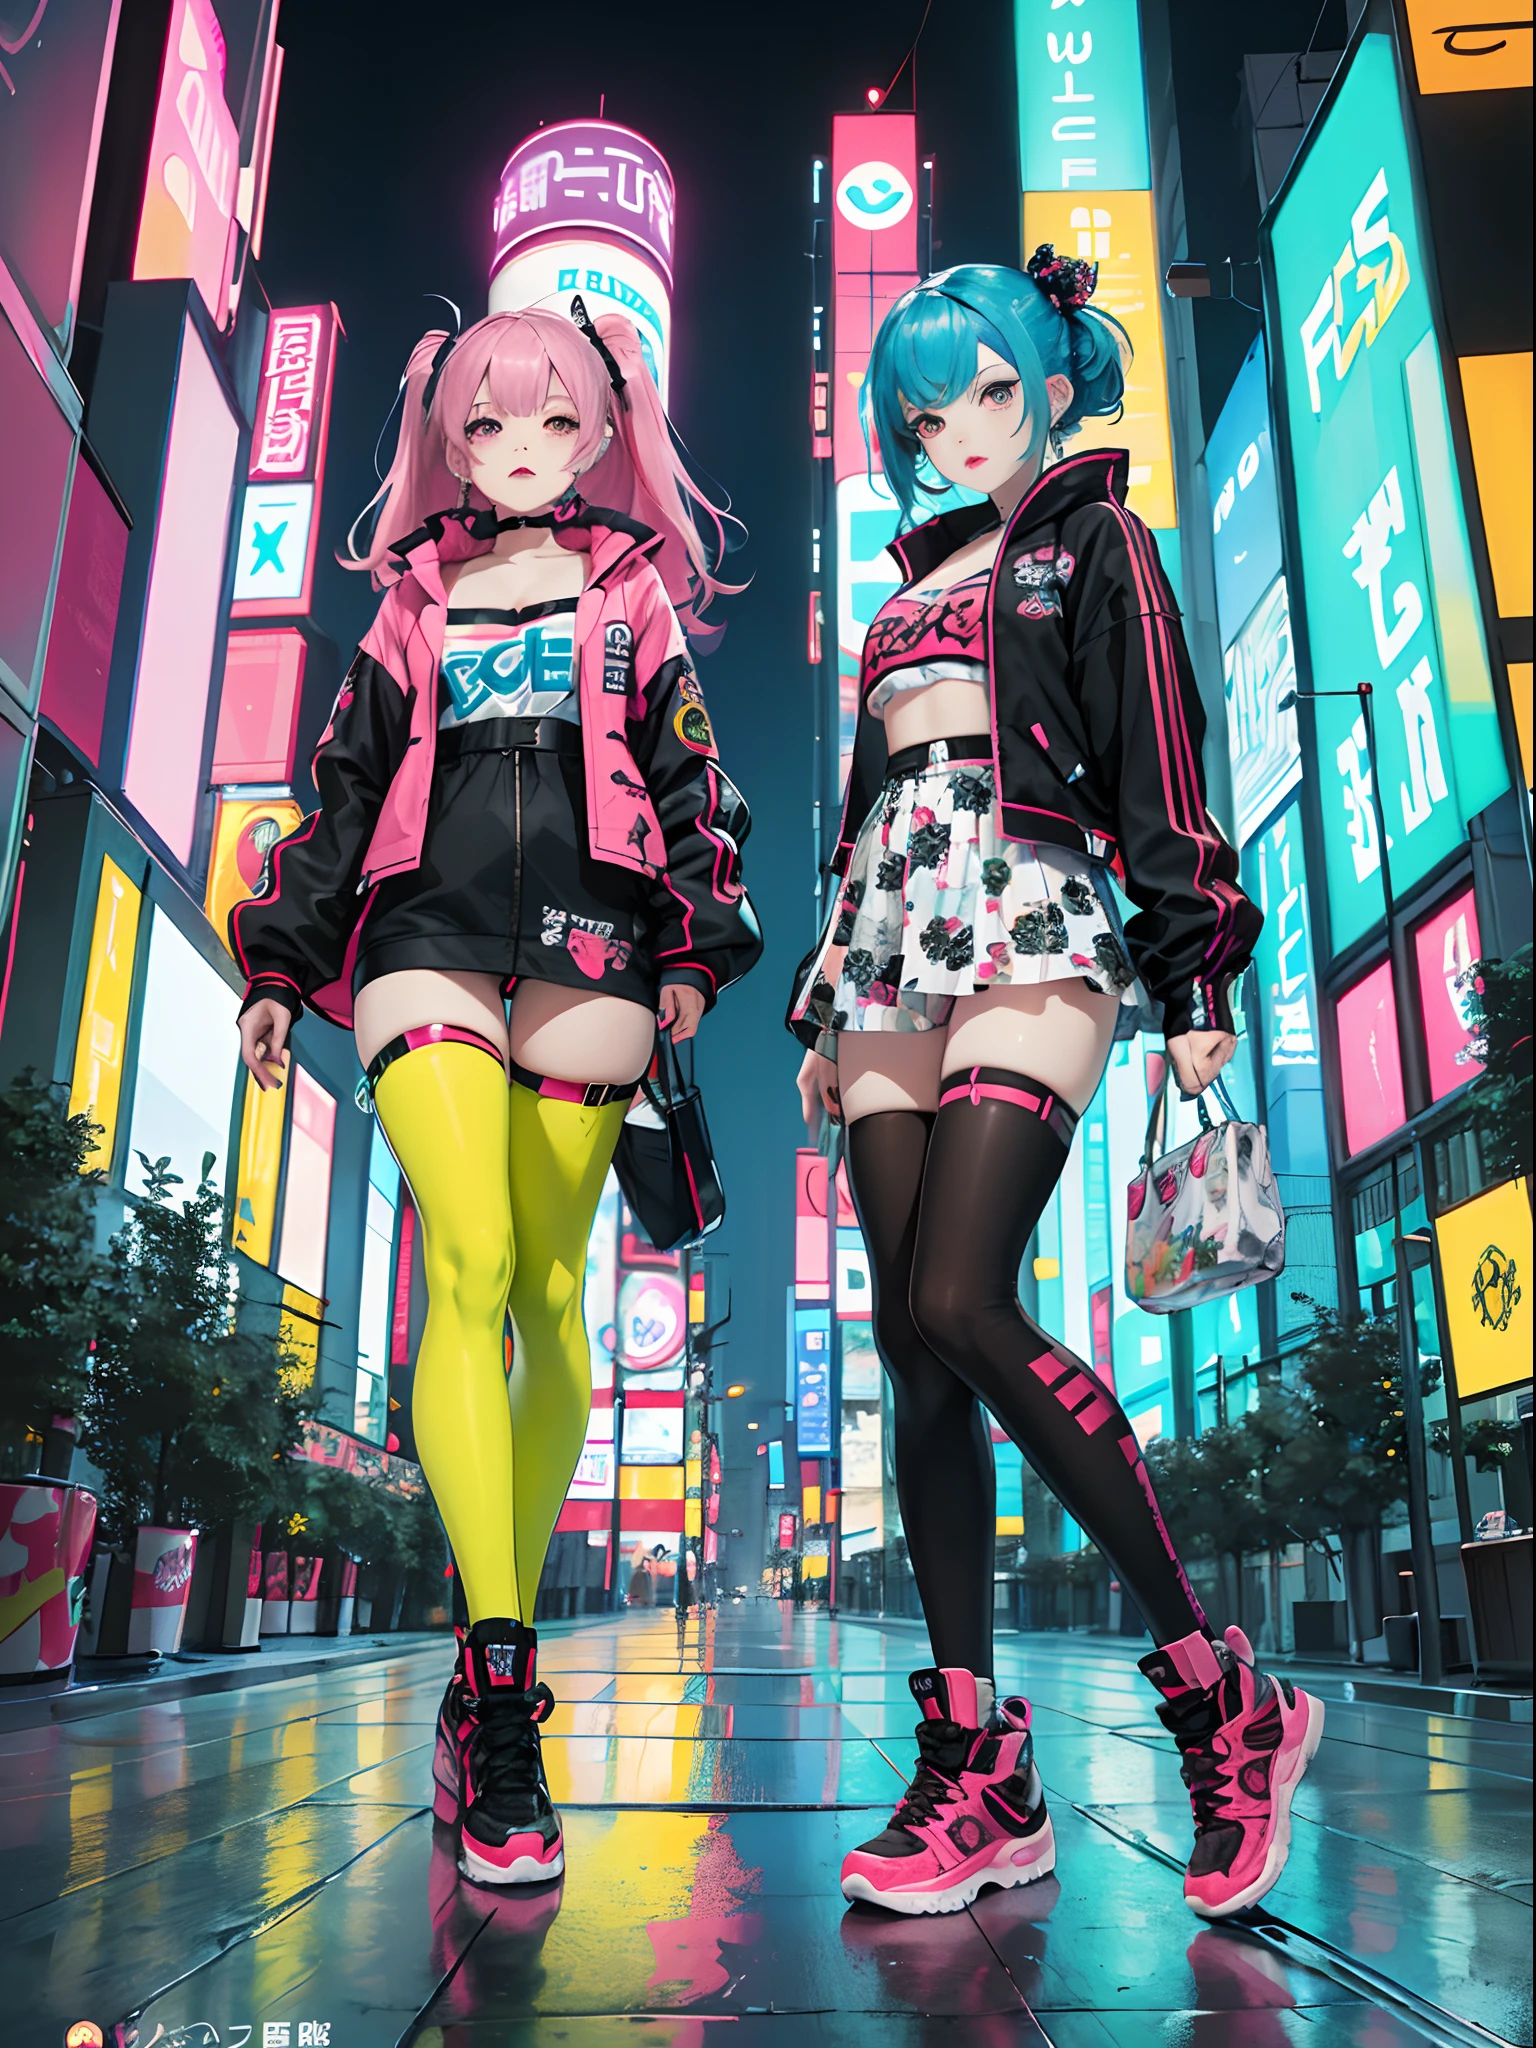 An animé illustration of 2 girls, filles cyberpunk confiantes avec une expression impertinente, ((Tenue pop et veste tech inspirées de Harajuku)), couleurs et motifs audacieux, des accessoires accrocheurs, coiffure tendance et innovante, maquillage vibrant, ((pose dynamique)), paysage urbain cyberpunk futuriste éblouissant, grattes ciels, enseignes au néon, lumières LED lumineuses, palette de couleurs vives et vives, animé, illustration, (beau visage détaillé), détails complexes, ultra détaillé.